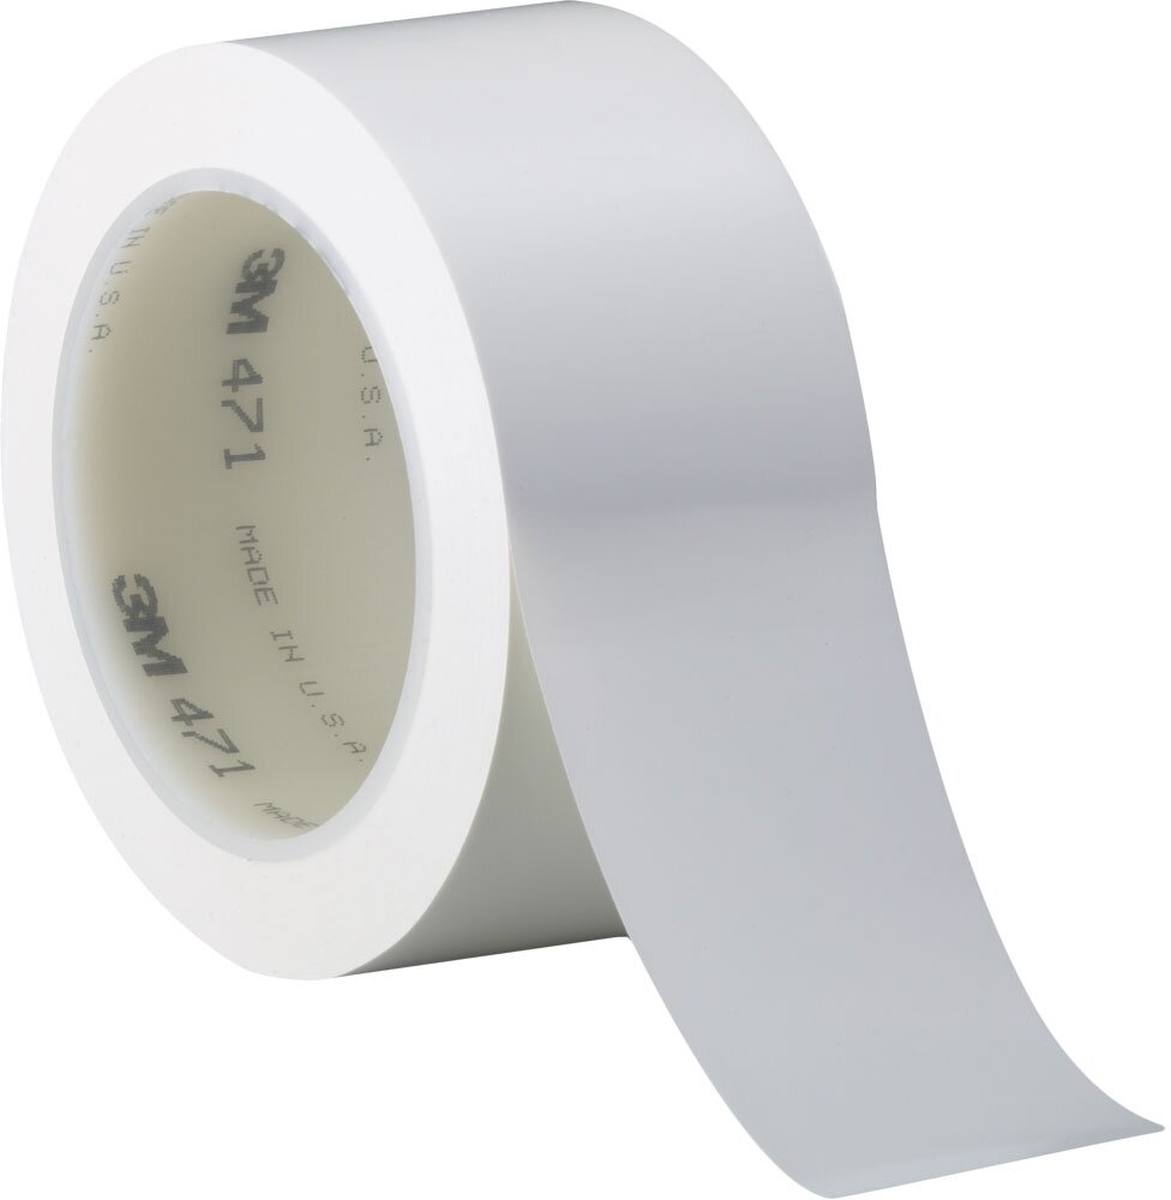 Nastro adesivo 3M in PVC morbido 471 F, bianco, 19 mm x 33 m, 0,13 mm